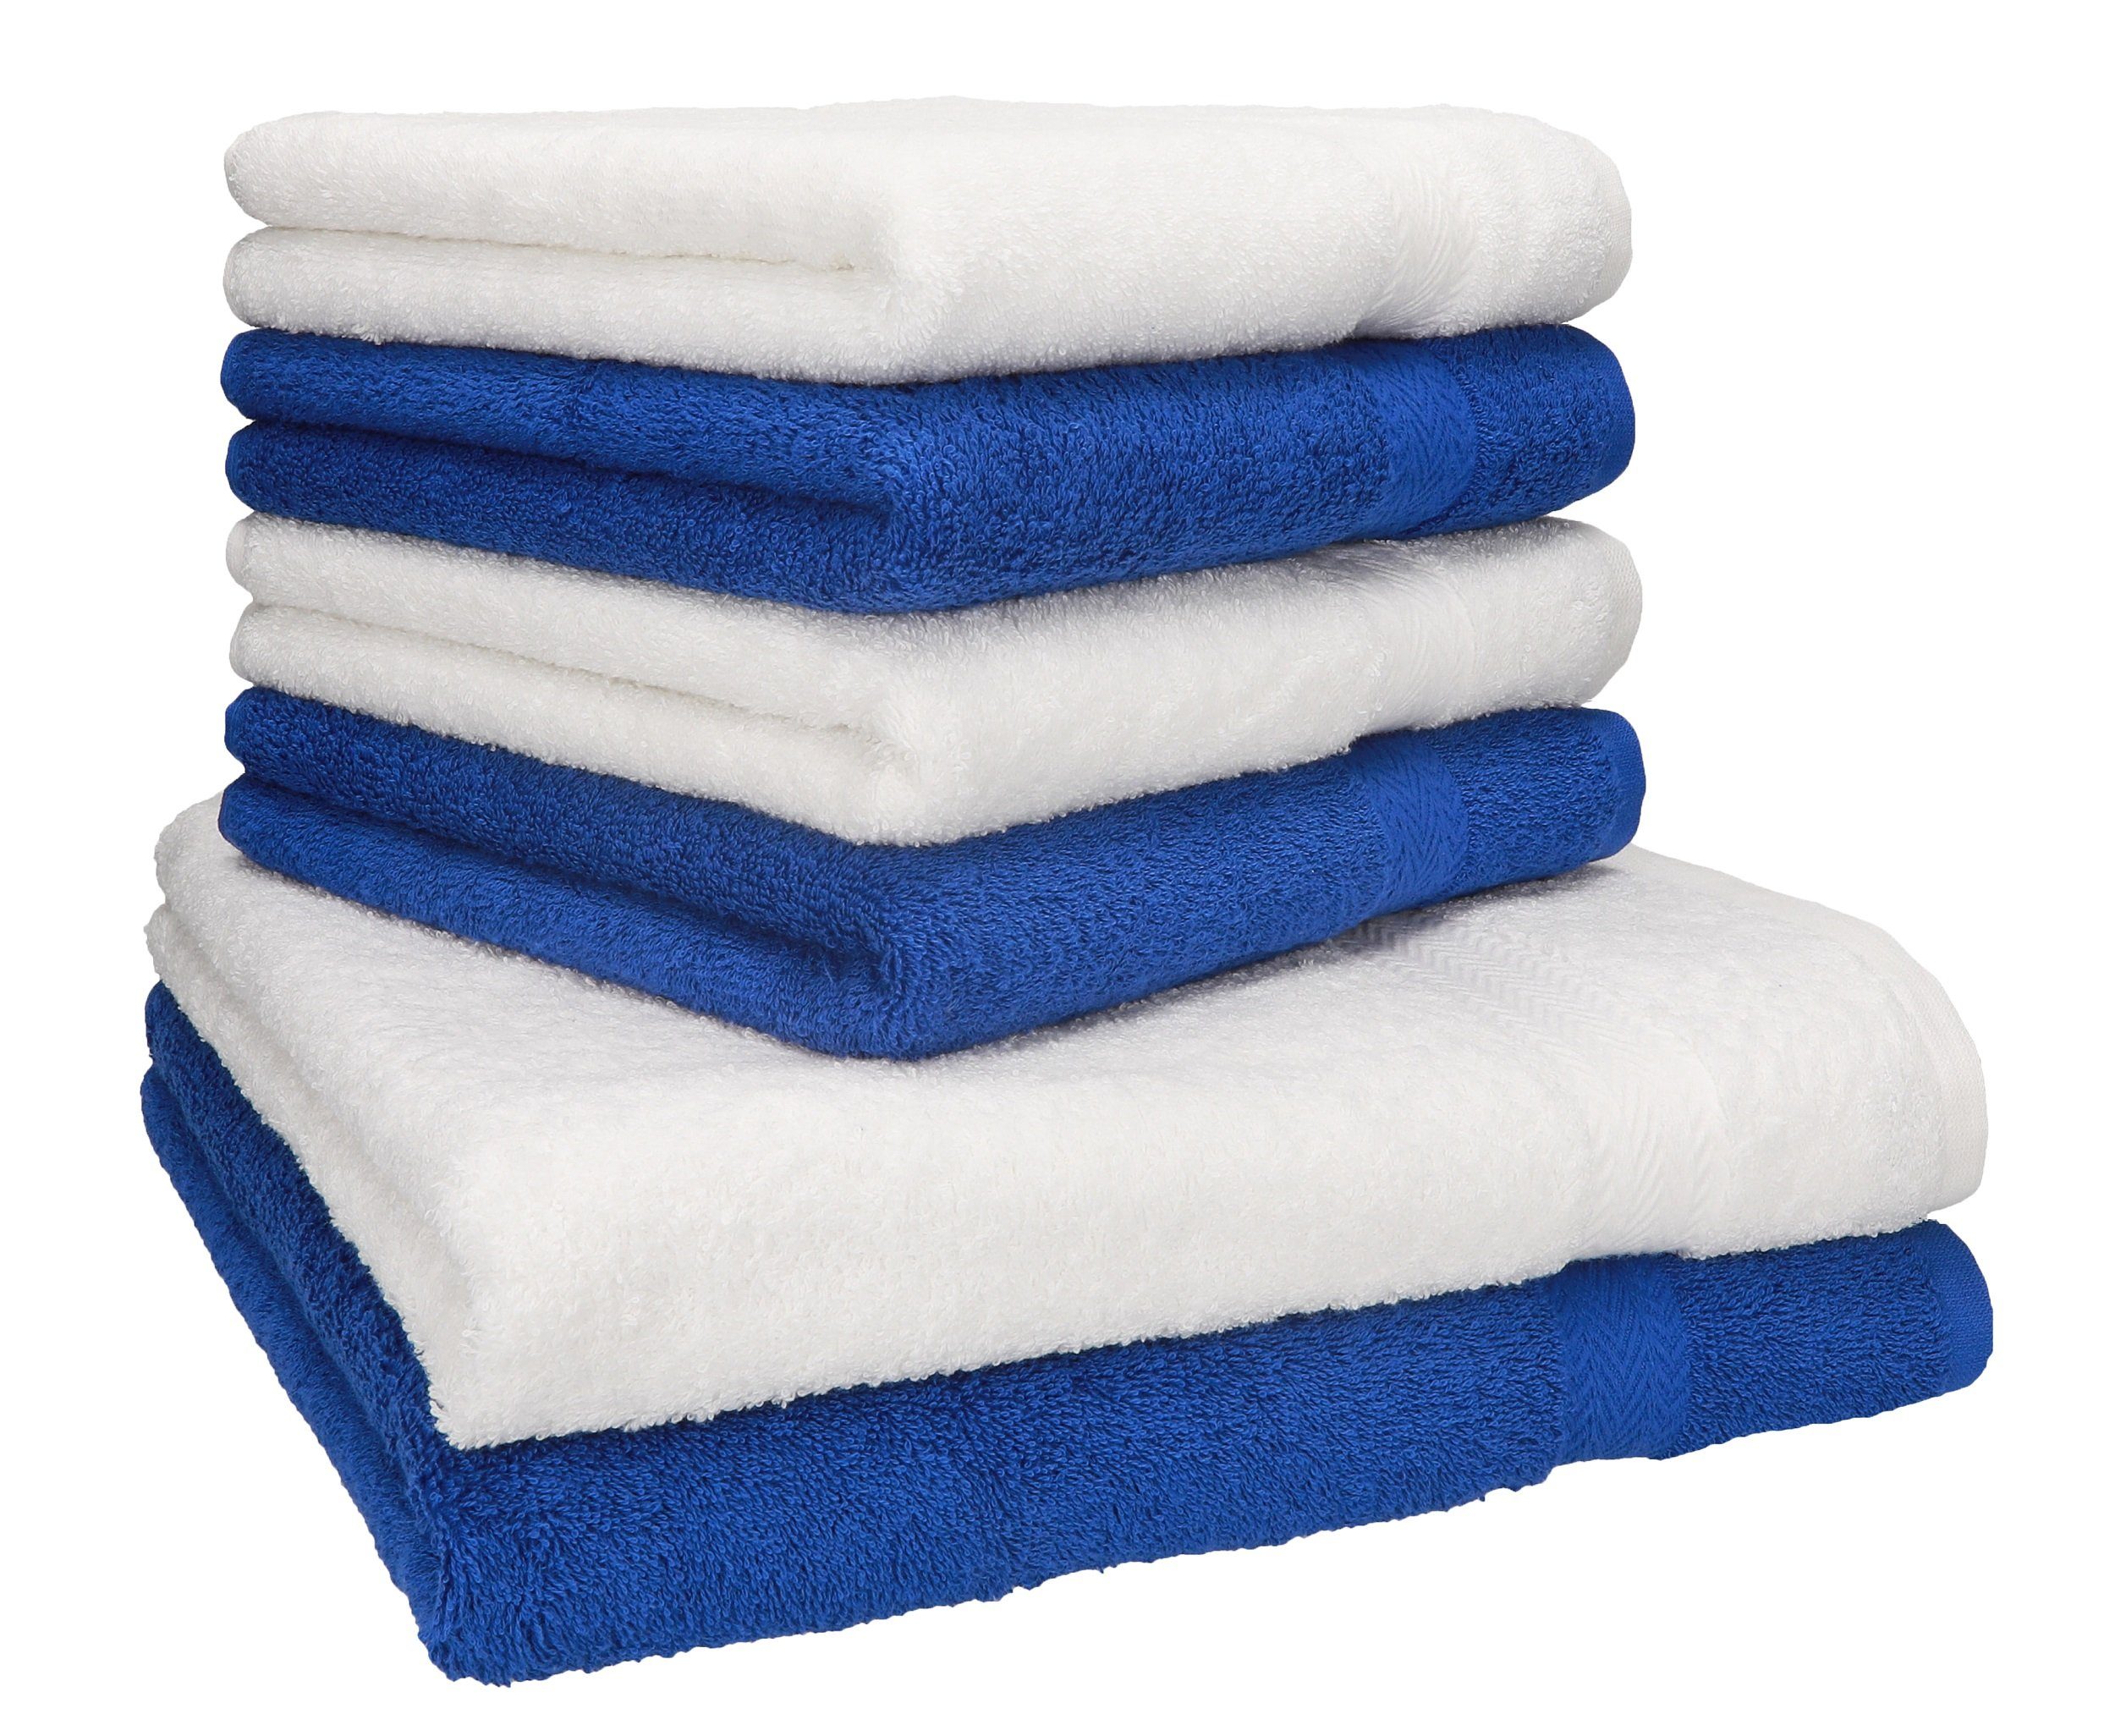 Betz Handtuch Set 6-TLG. Handtuch-Set Premium 100% Baumwolle 2 Duschtücher 4 Handtücher Farbe blau und weiß, 100% Baumwolle